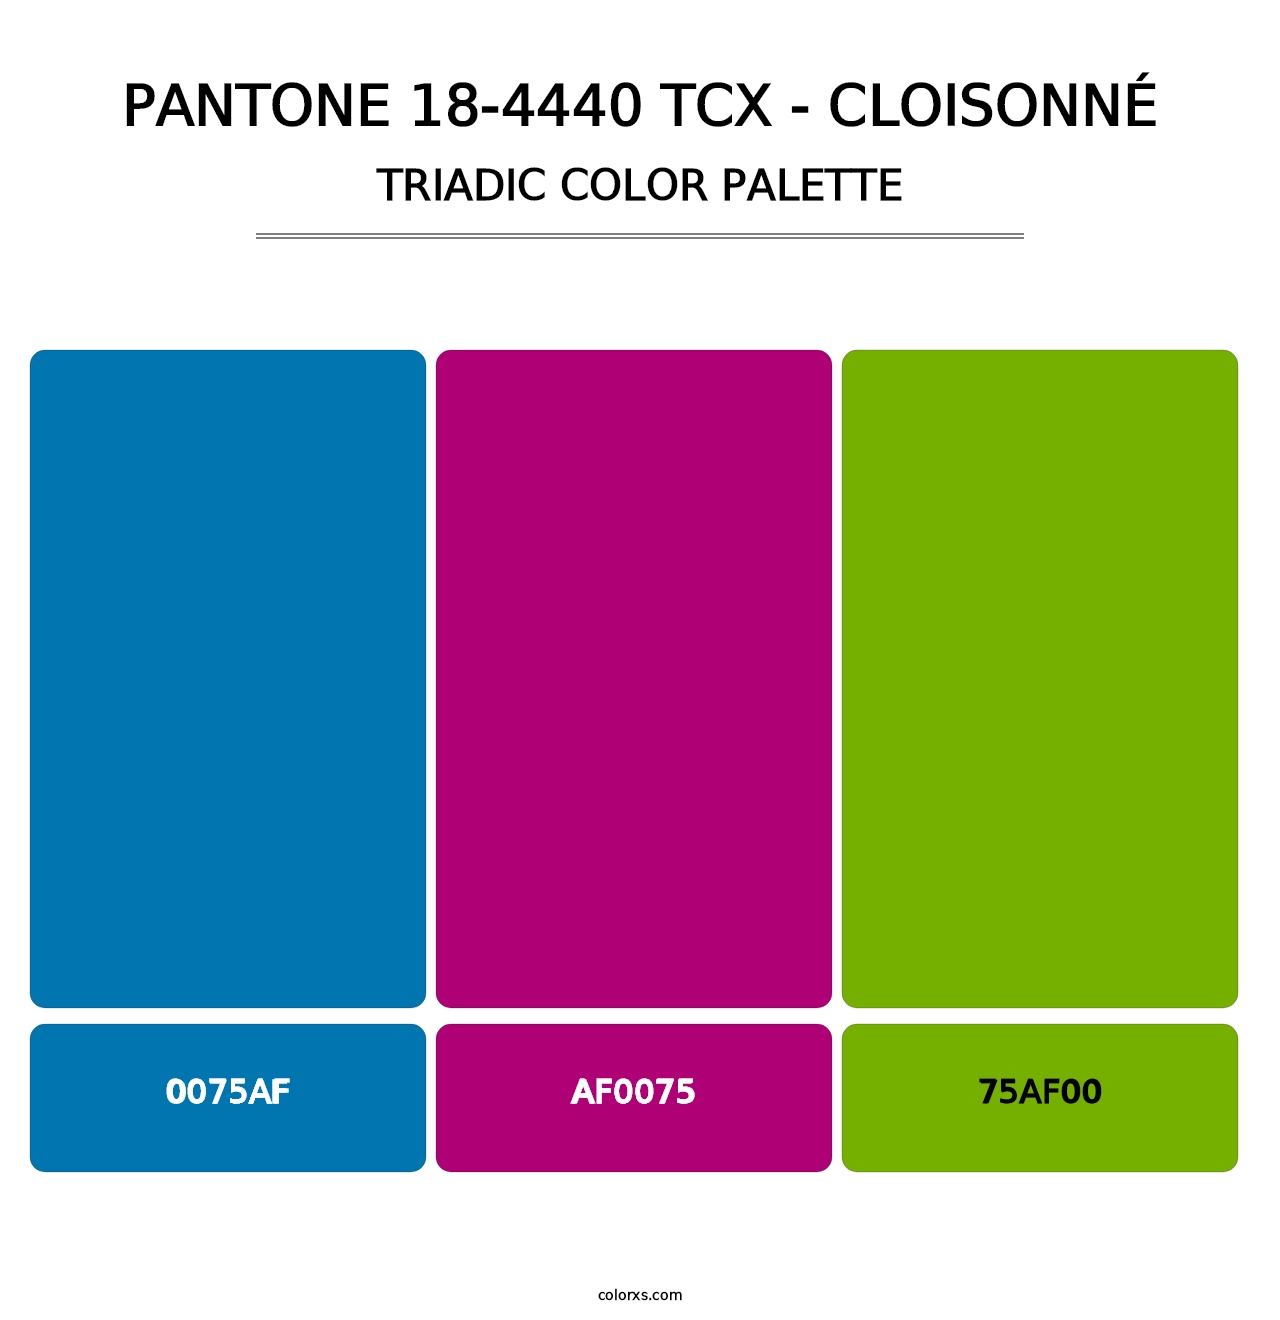 PANTONE 18-4440 TCX - Cloisonné - Triadic Color Palette